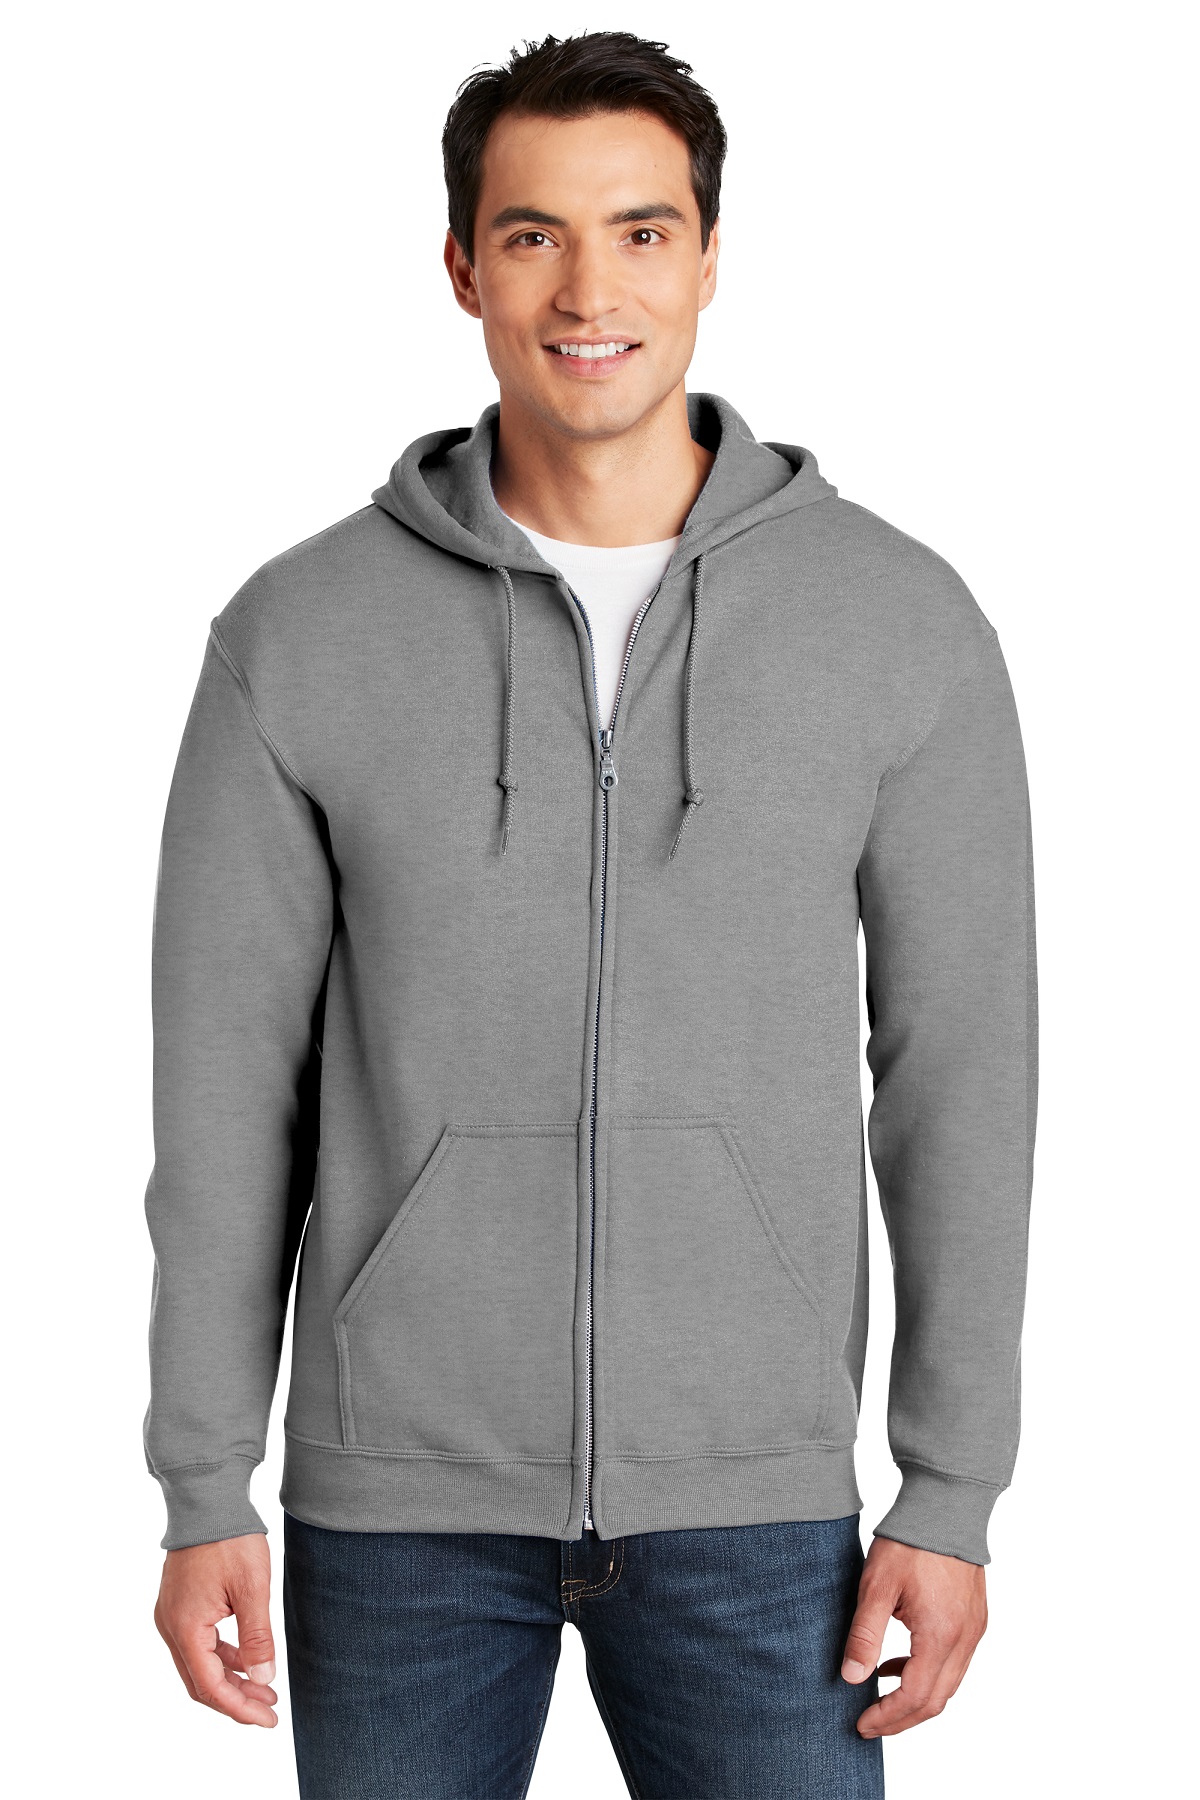 Gildan Embroidered Men's Full Zip Hooded Sweatshirt - Queensboro